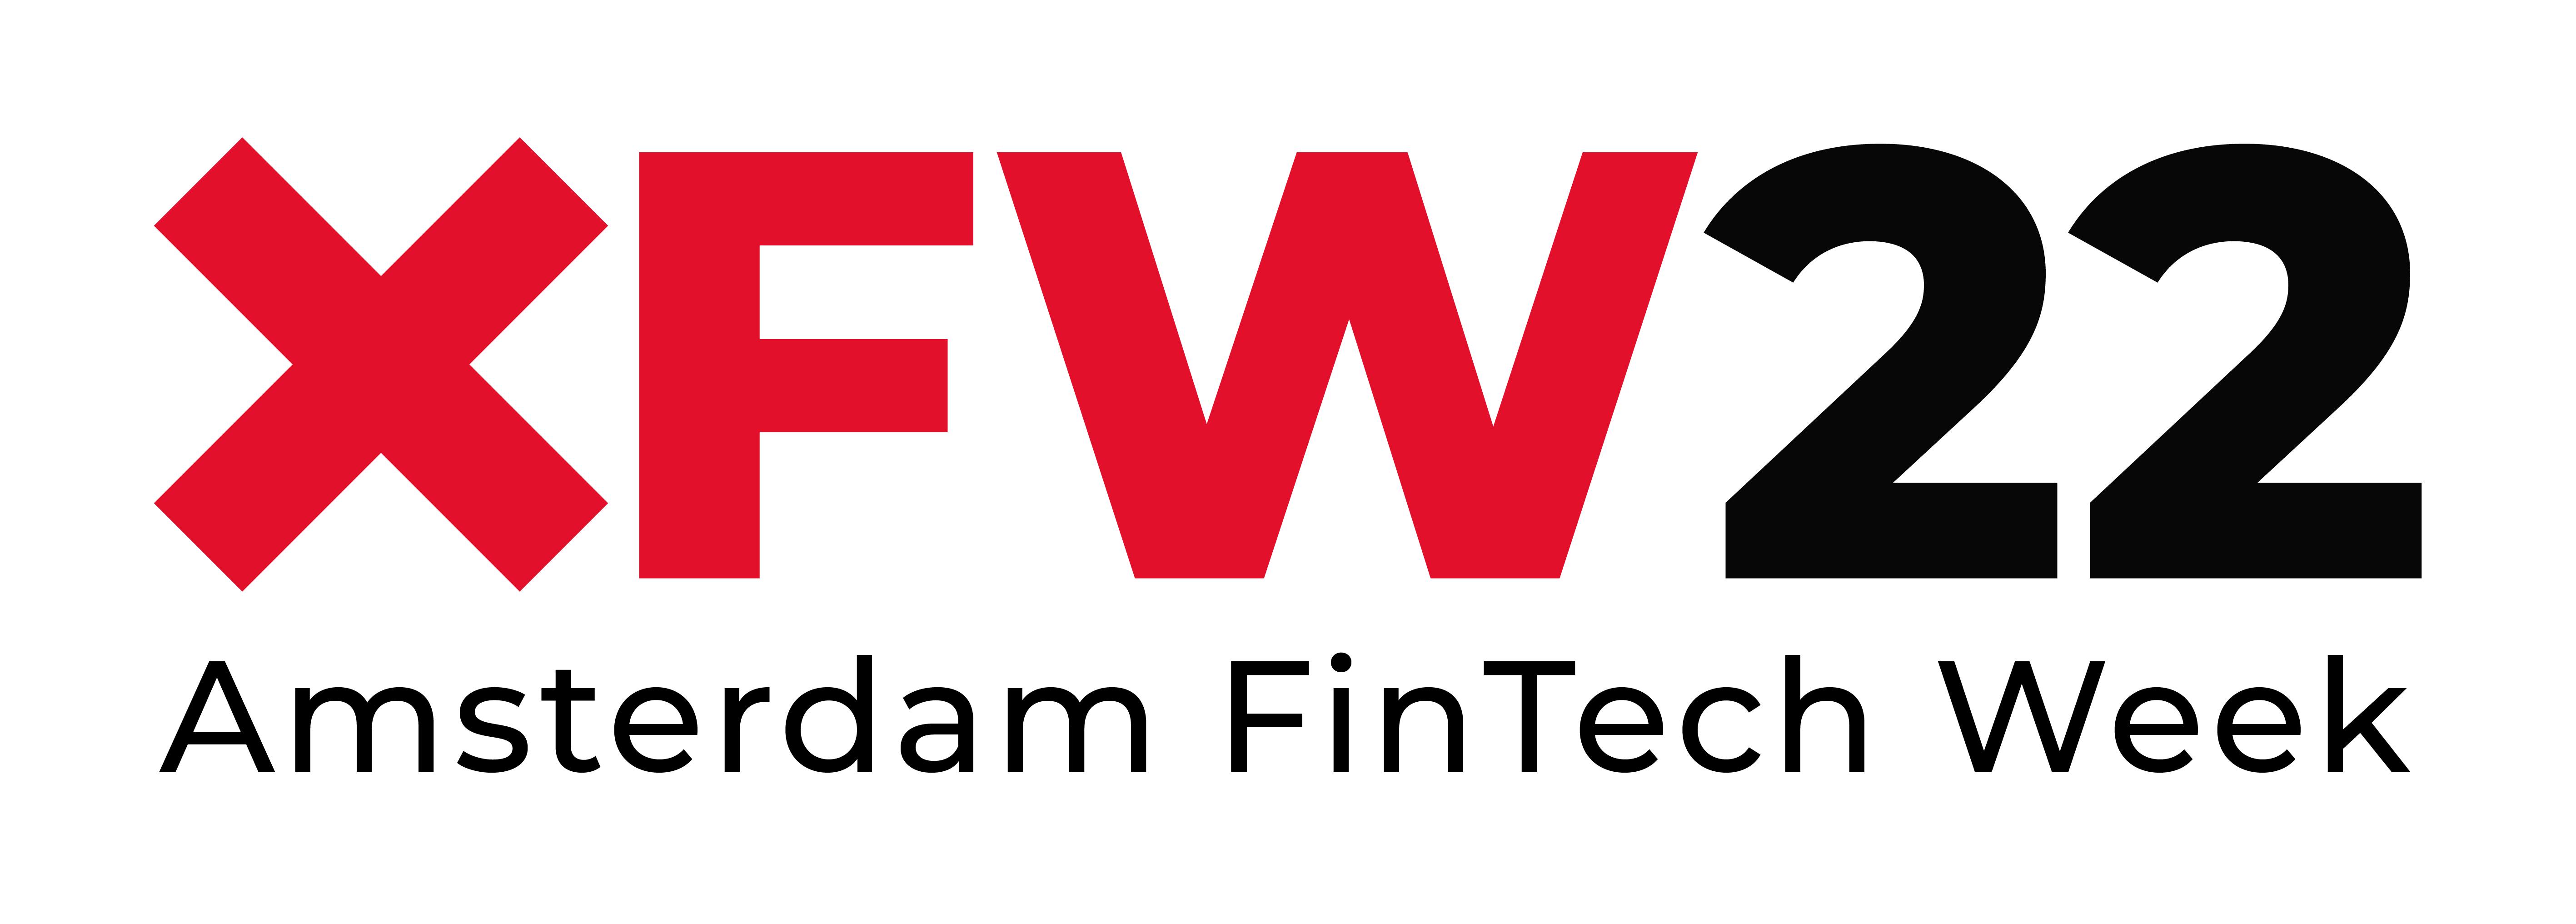 XFW 2022 logo-04 (3)